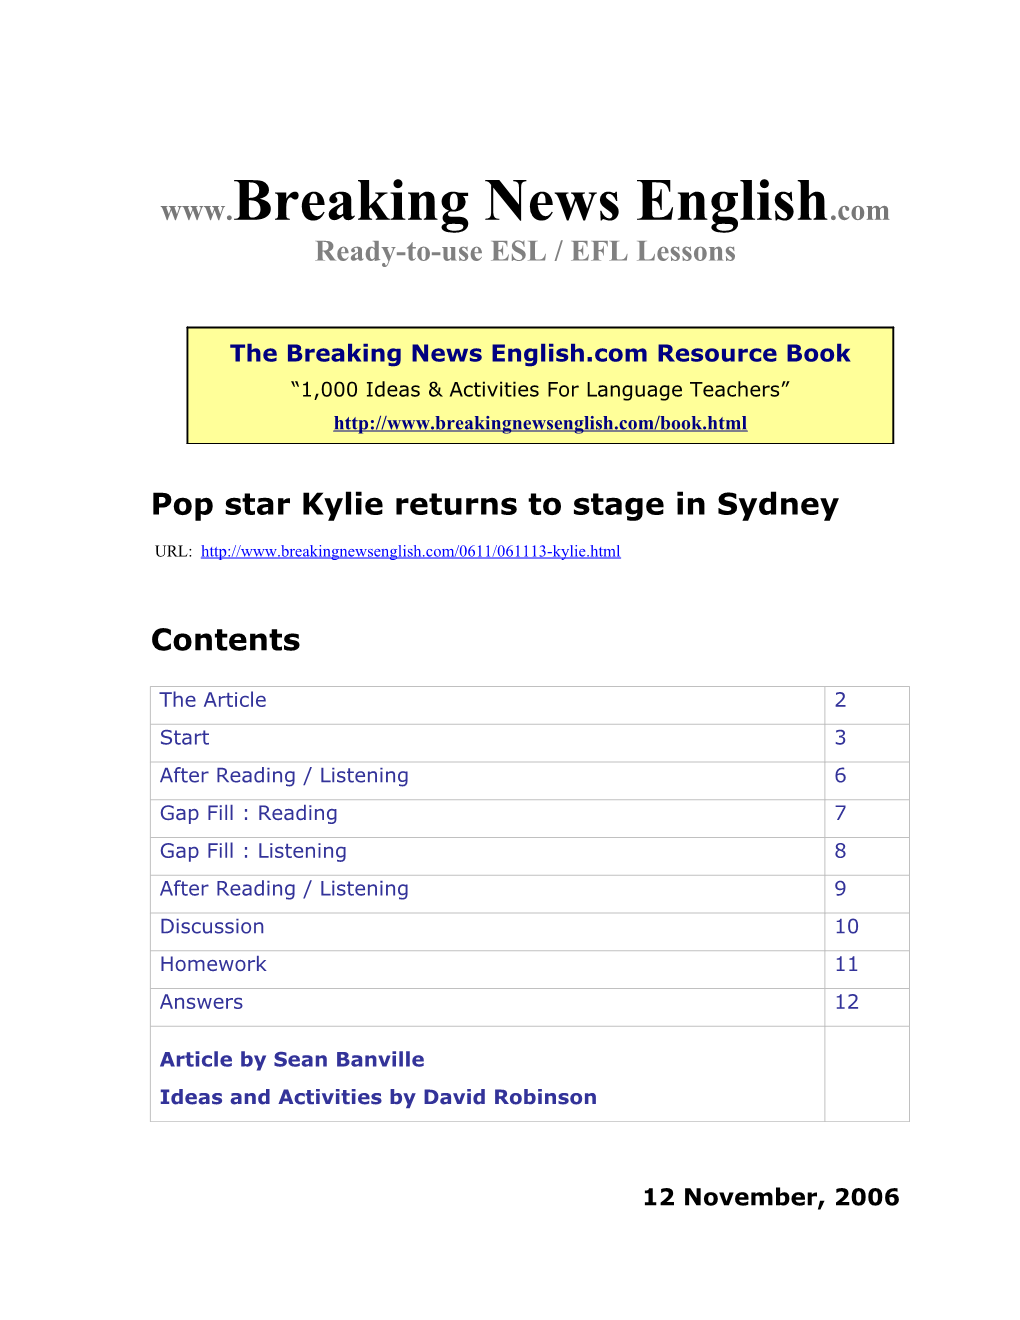 Pop Star Kylie Returns to Stage in Sydney